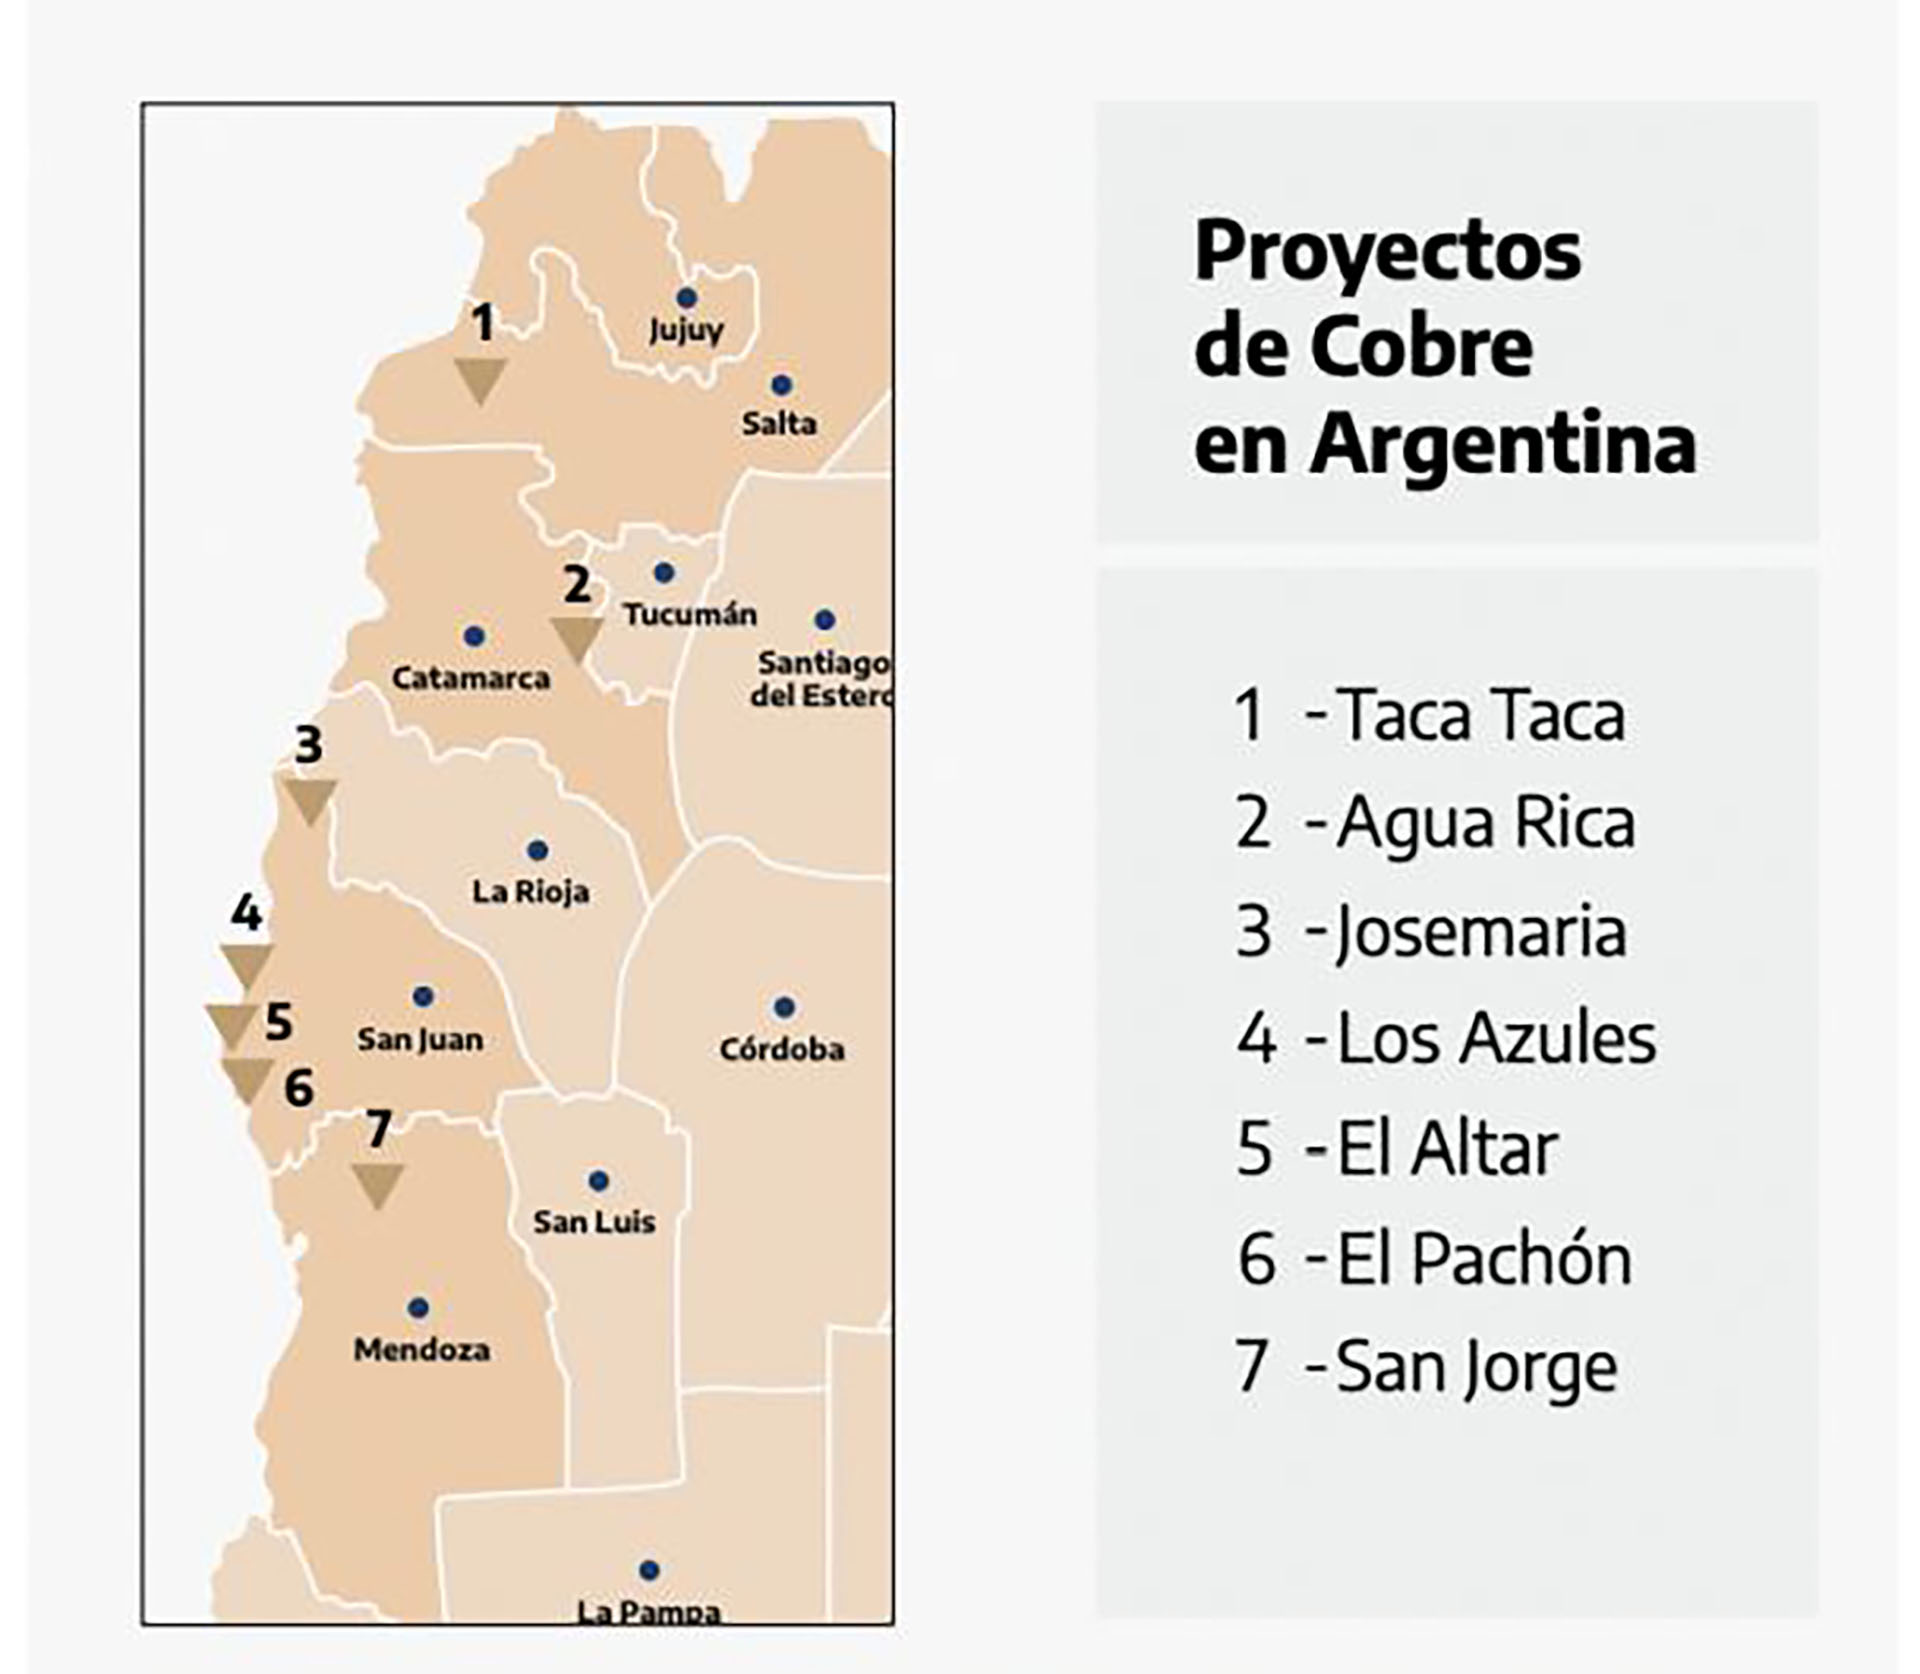 La ubicación geográfica de los 7 principales proyectos de cobre existentes, en distintas etapas, en la Argentina. Los proyectos mineros son de largo estudio, construcción y maduración